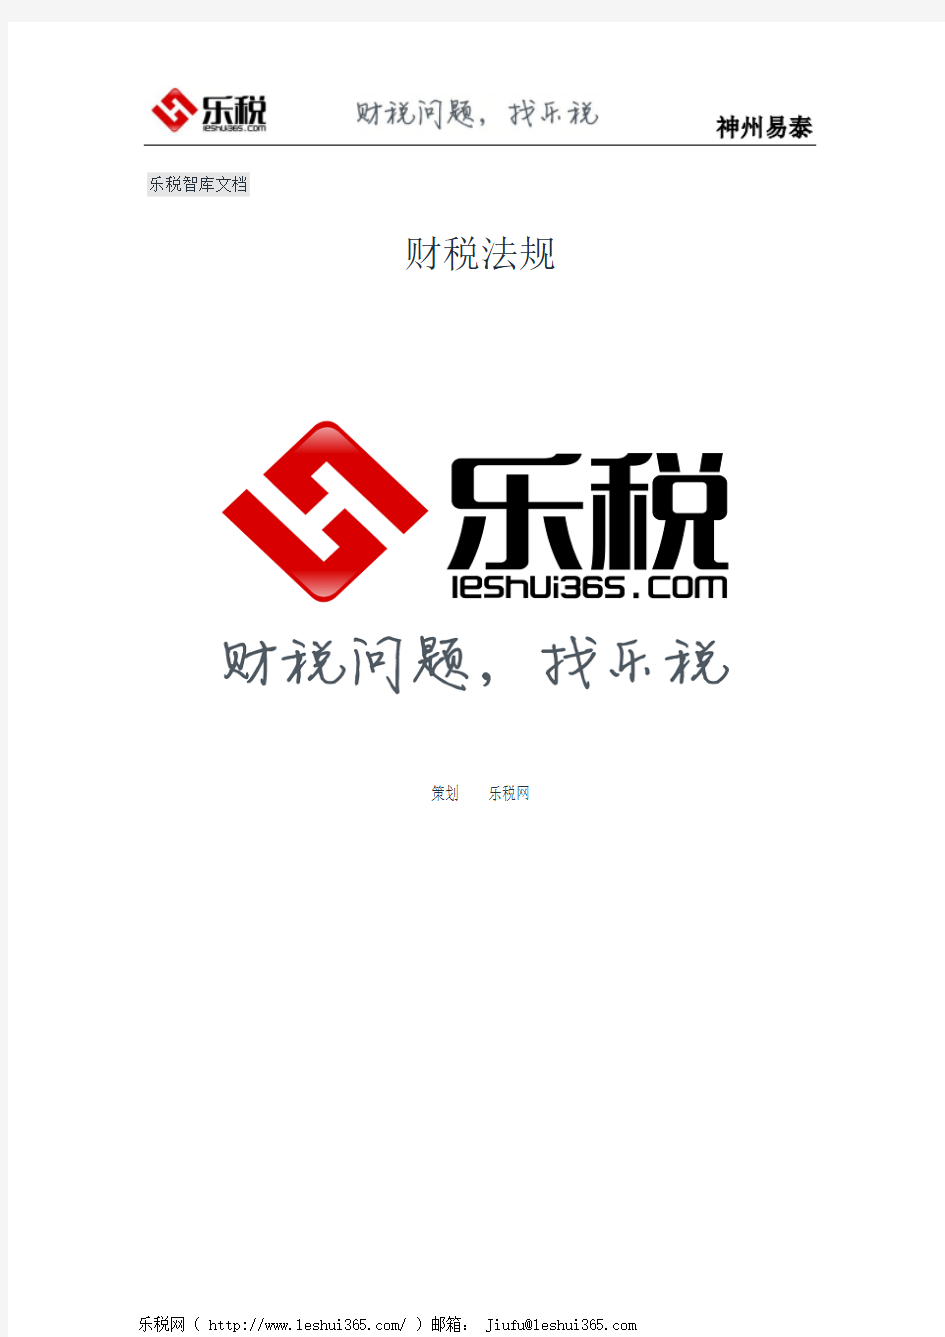 北京市地方税务局关于普通发票简并票种统一式样有关问题的公告